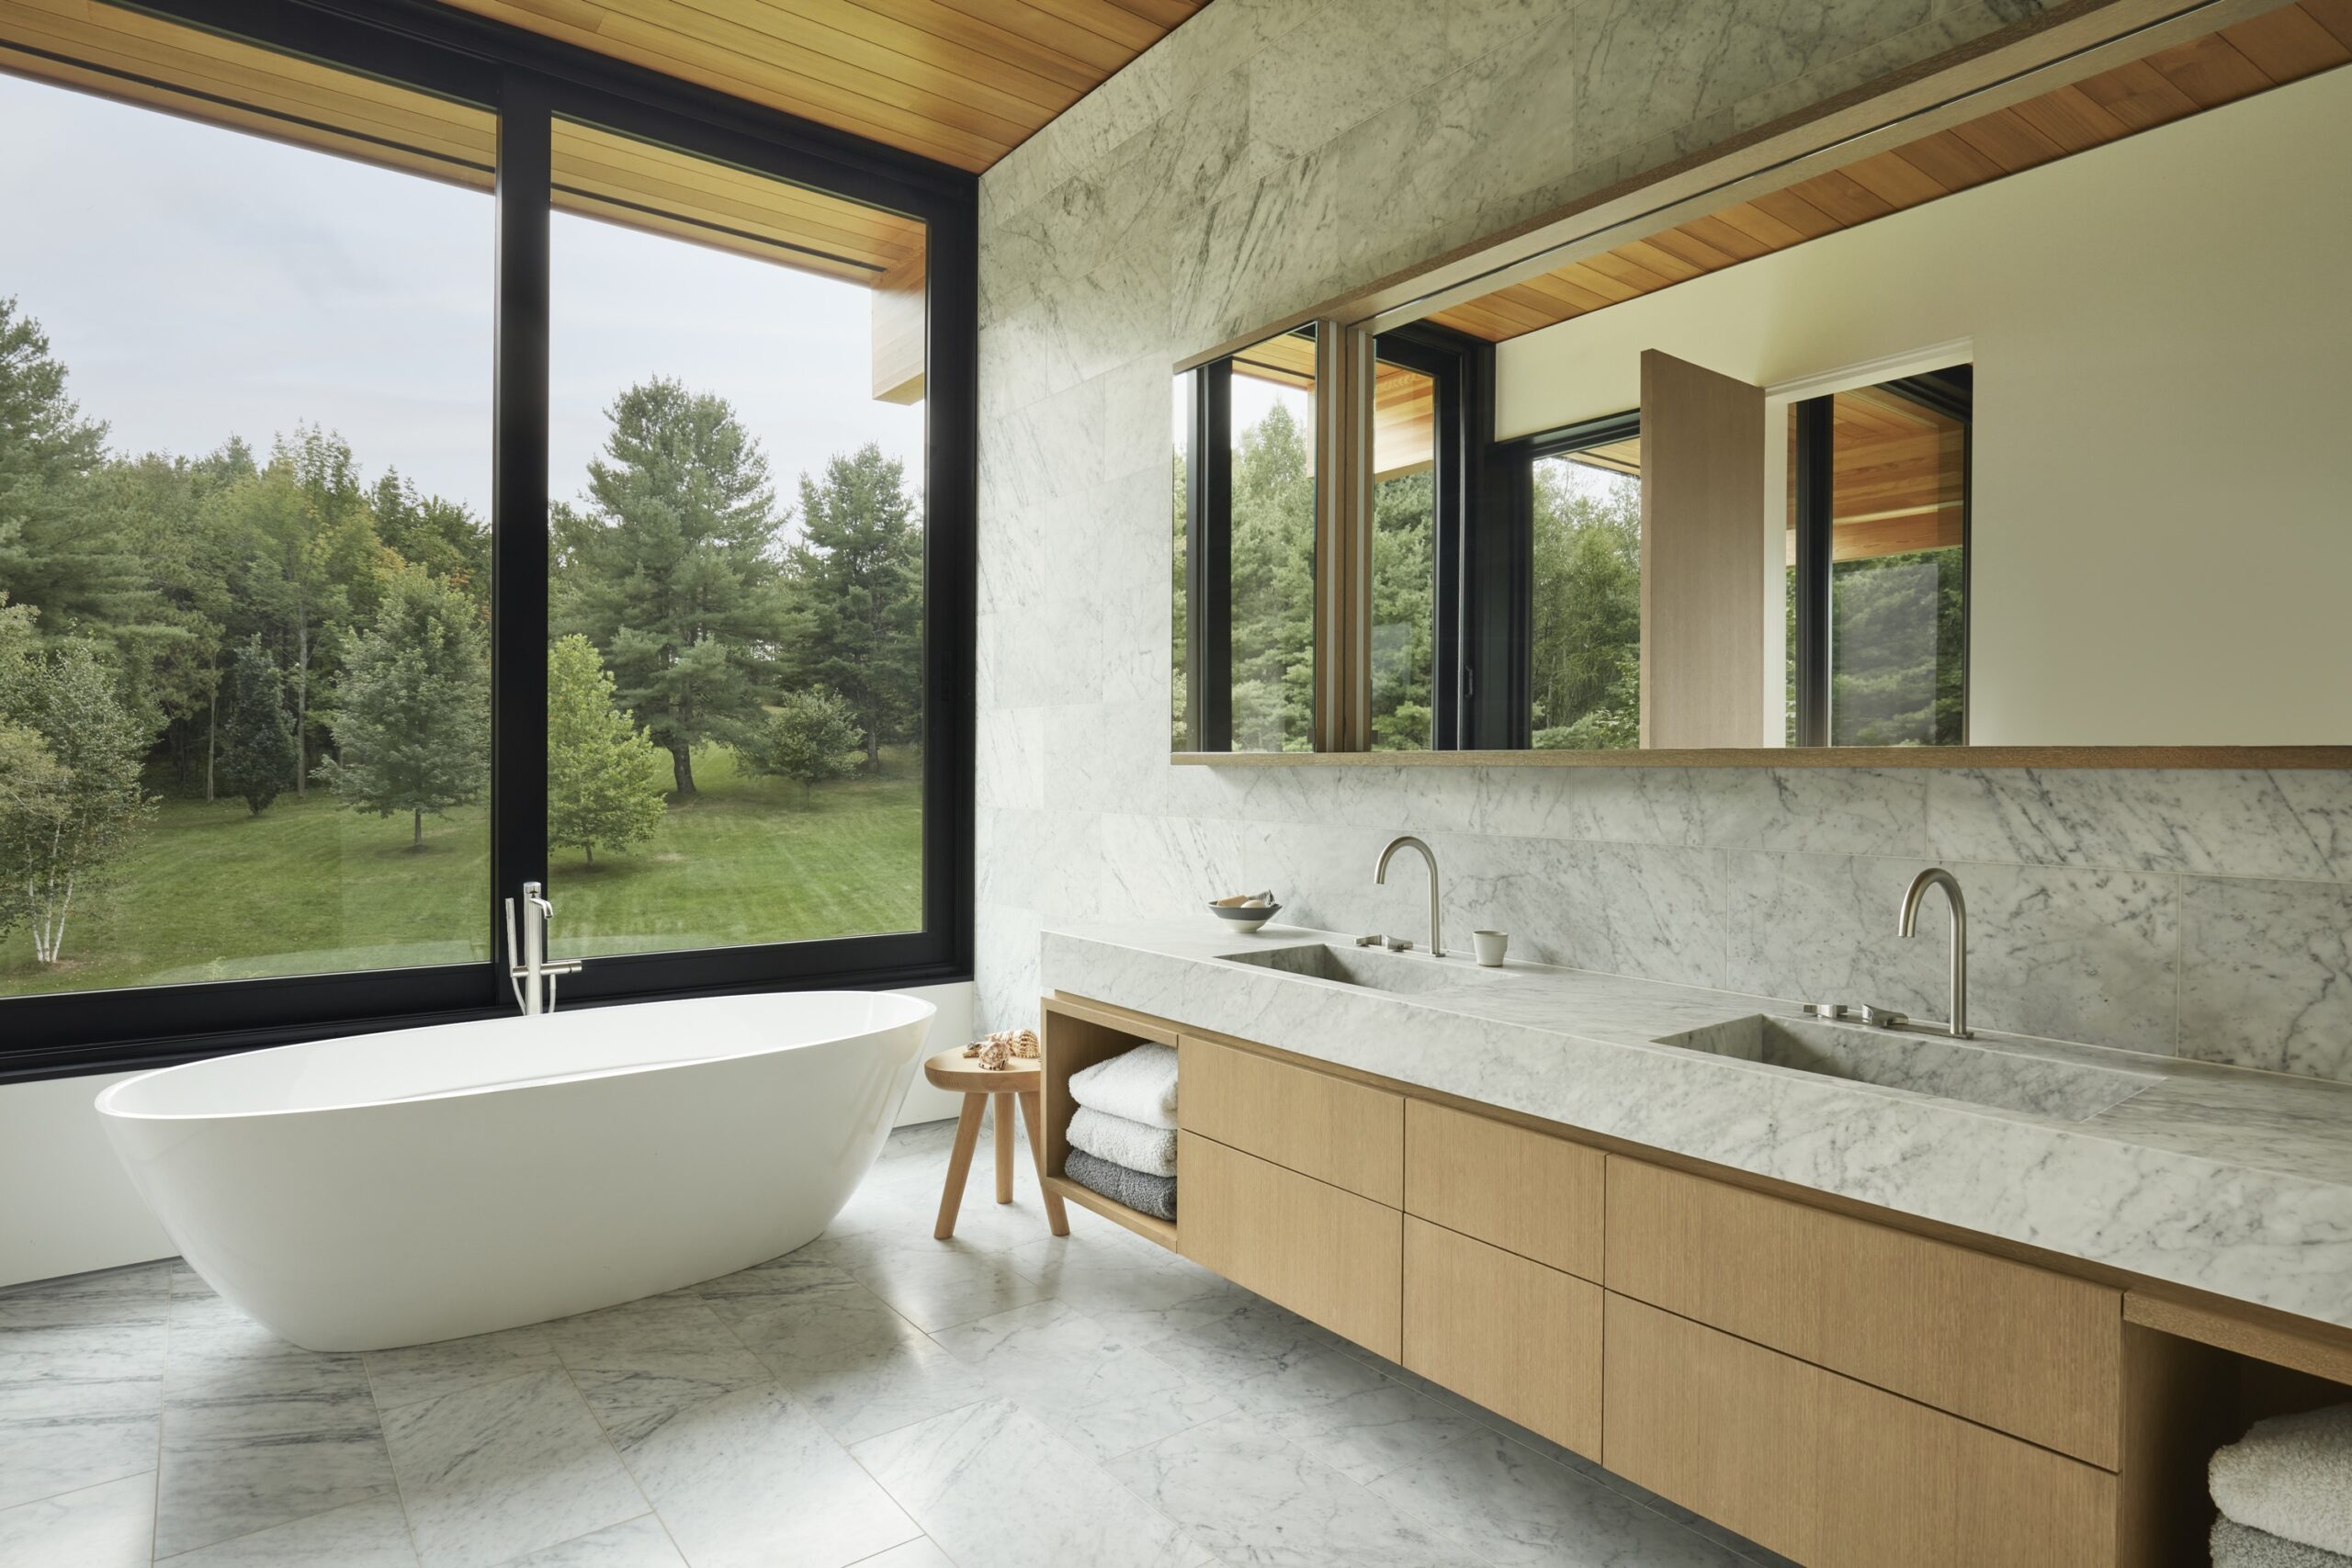 Salle de bain avec lavabo double, bain autoportant et vue sur le paysage boisé